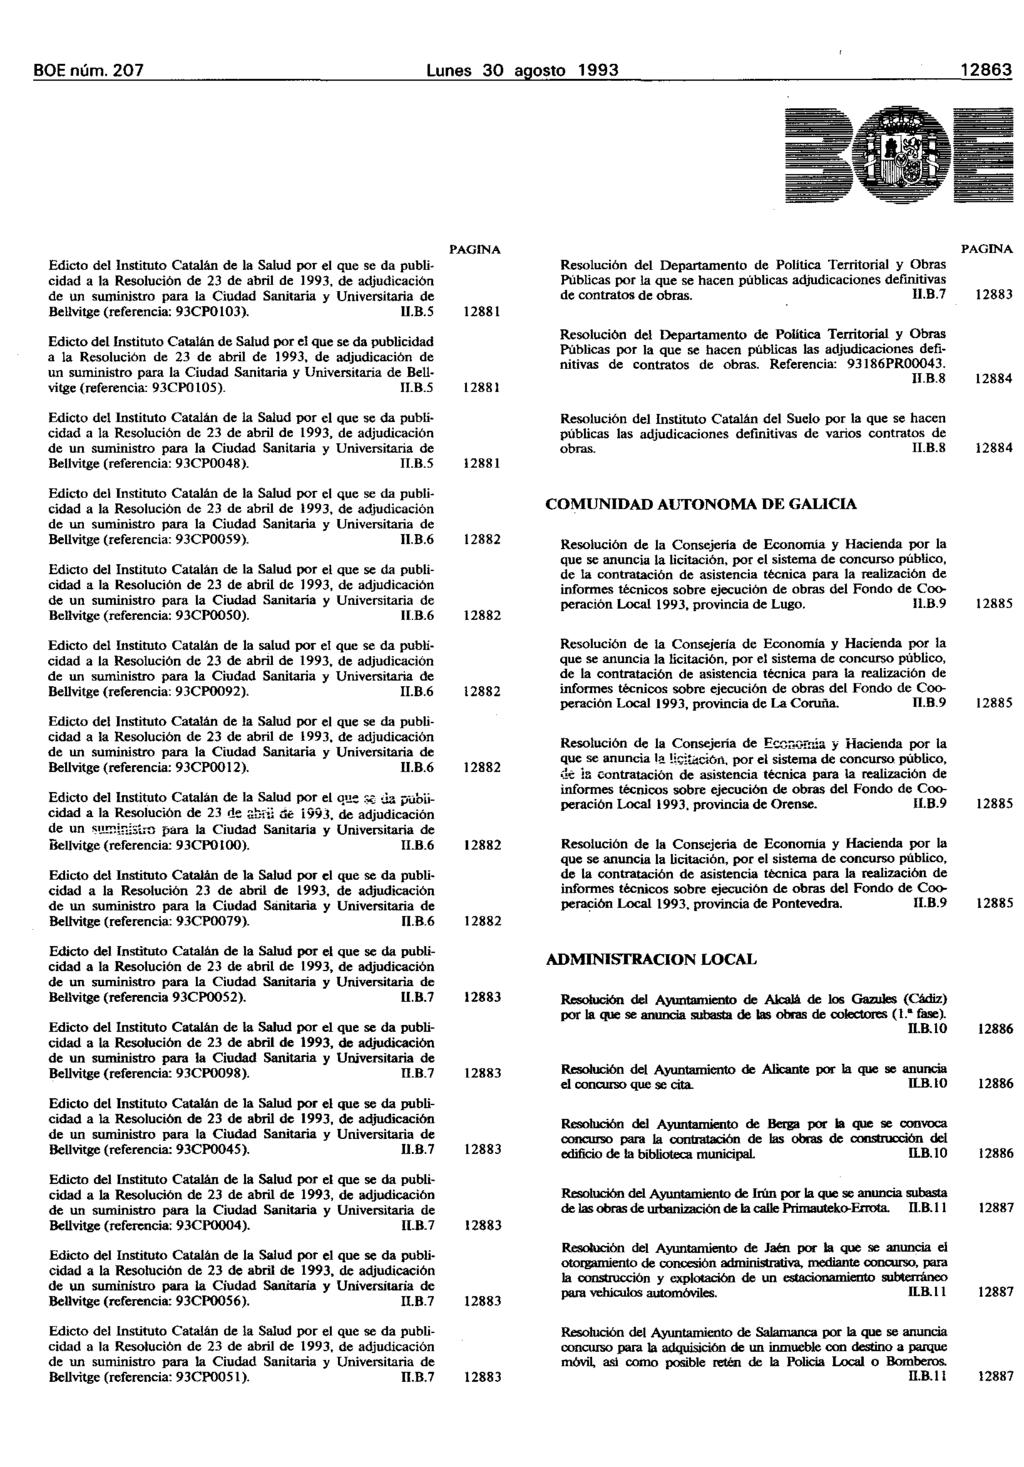 BOE núm. 207 Lunes 30 agosto 1993 12863 Edicto del Instituto Catalán de la SaIud por el que se da publicidad Bellvitge (referencia: 93CPOI03). U.B.5 Edicto dellnstituto Catalán de Salud por el que se da publicidad de un suministro para la Ciudad Sanitaria y Universitaria de BeU vitge (referencia: 93CP0105).